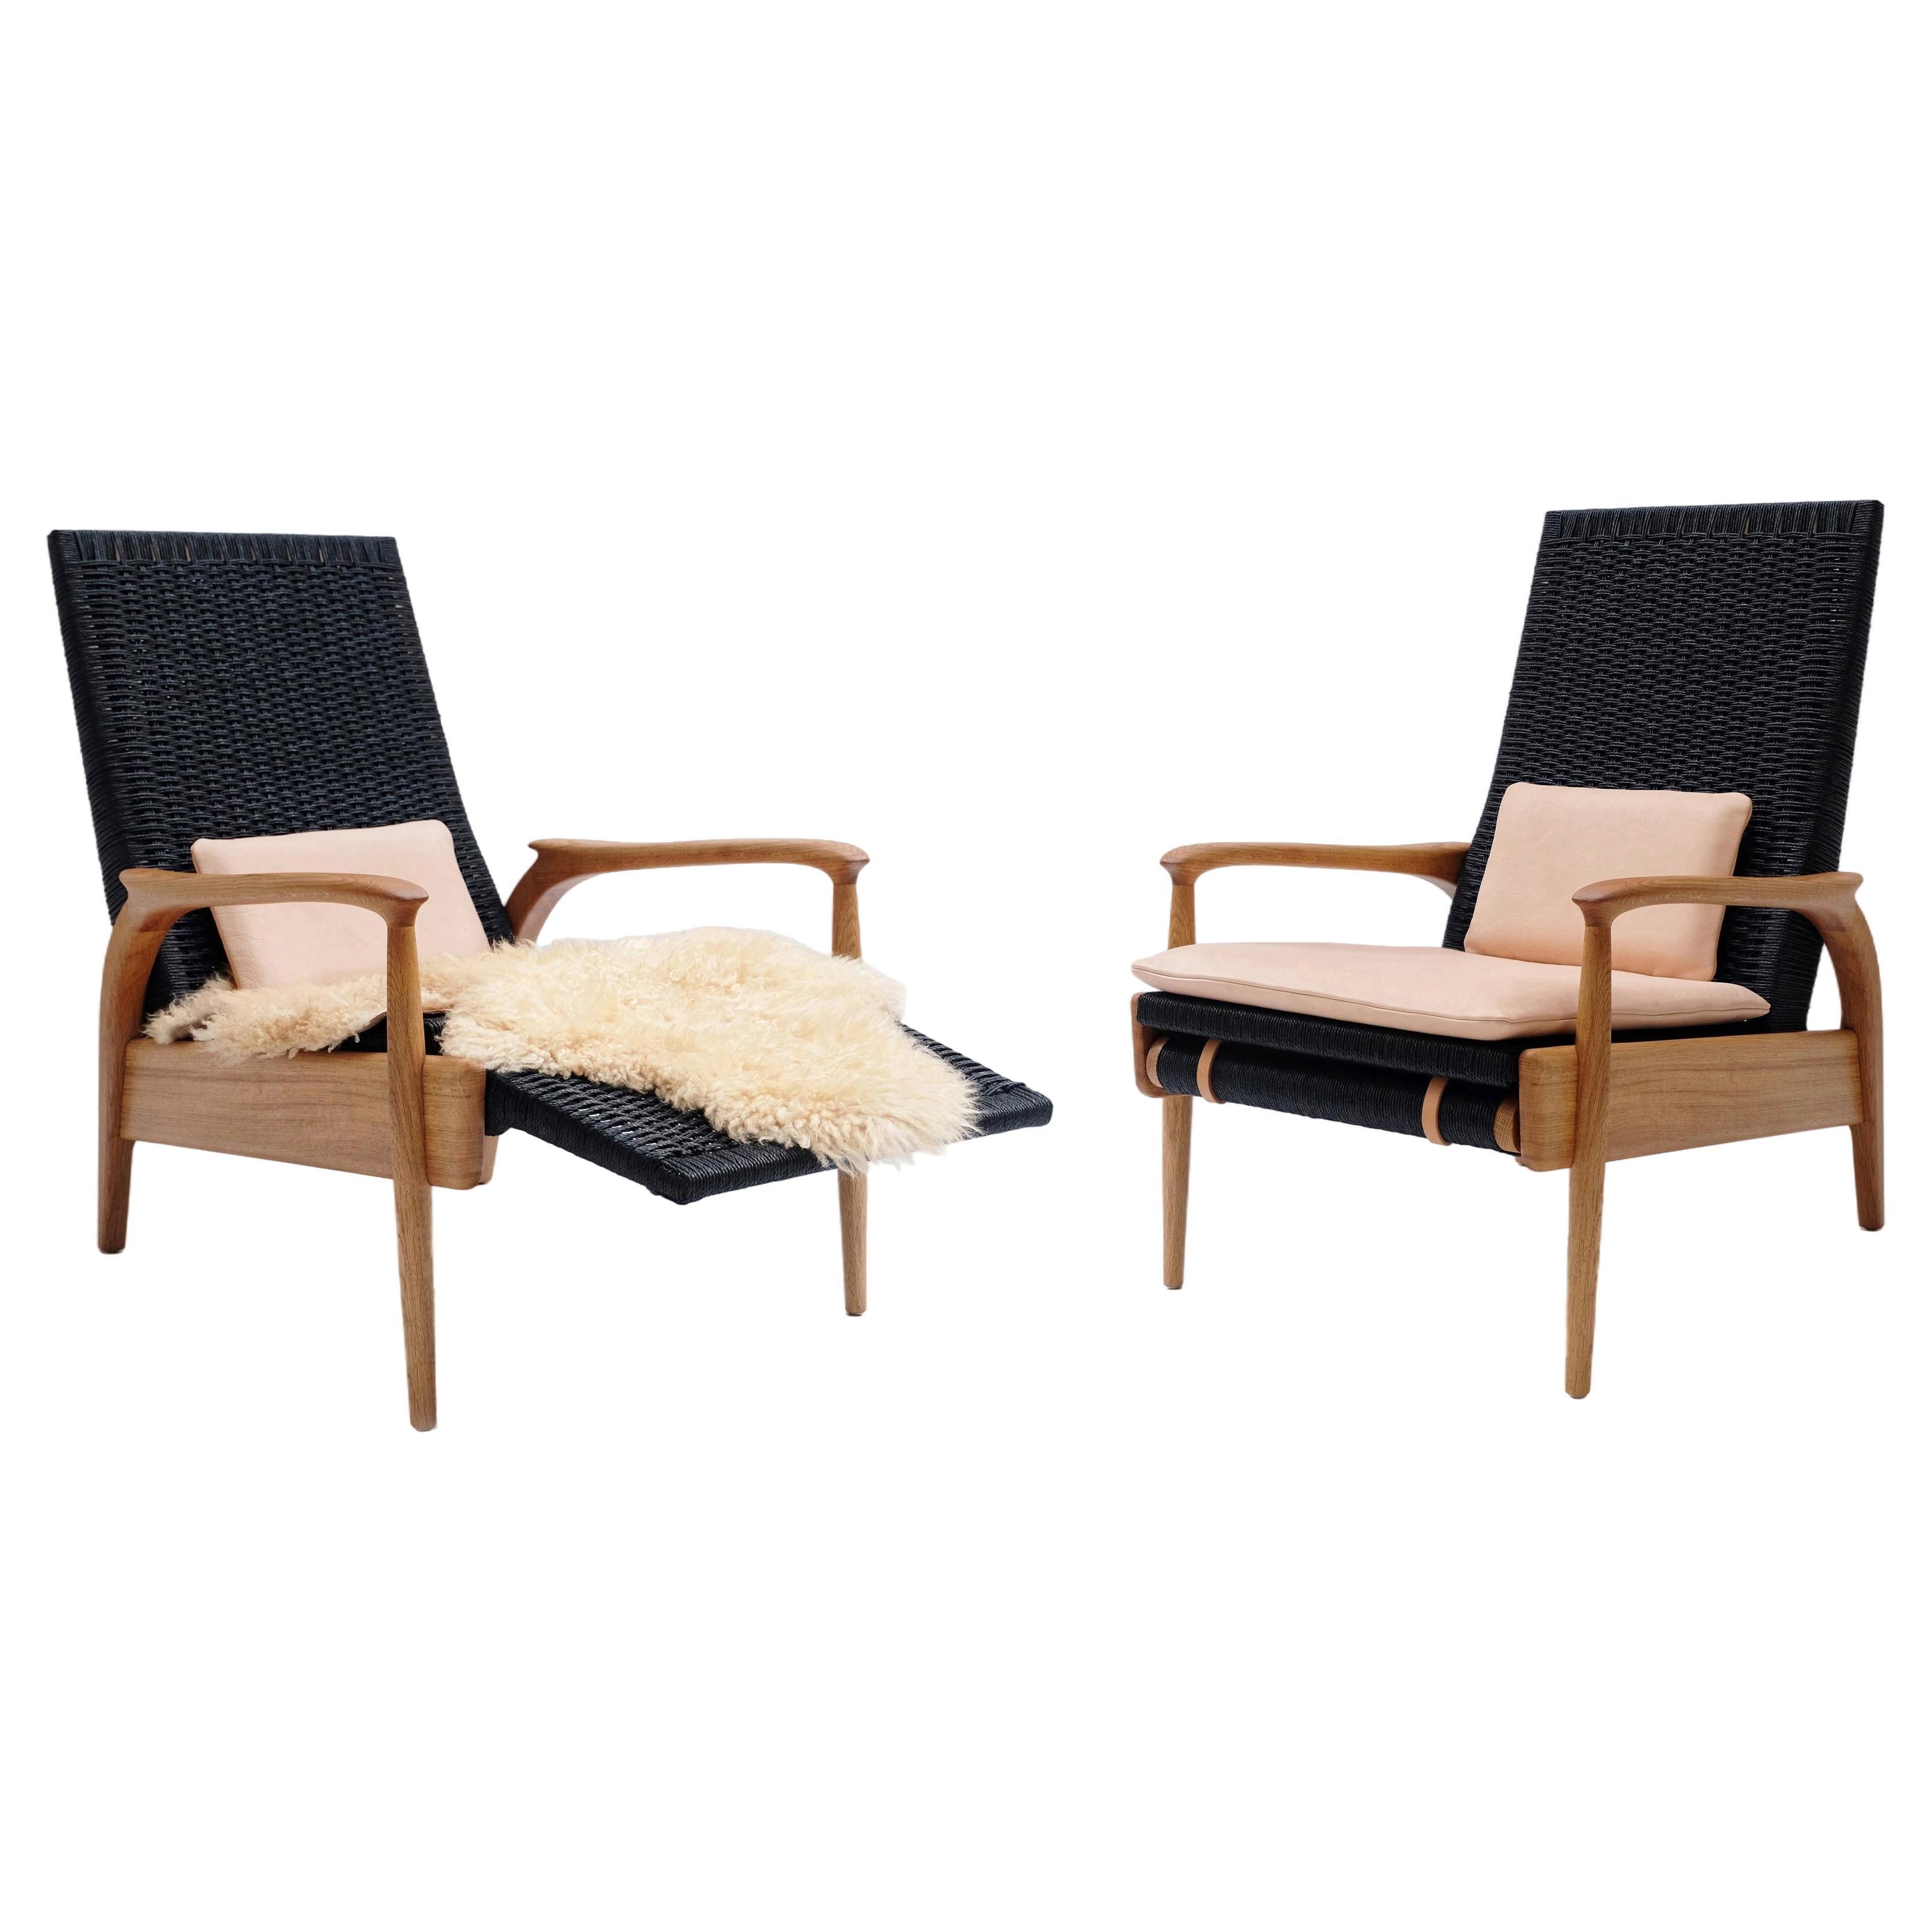 Paire de fauteuils inclinables, Oak Oak massif, corde danoise noire, coussins en cuir